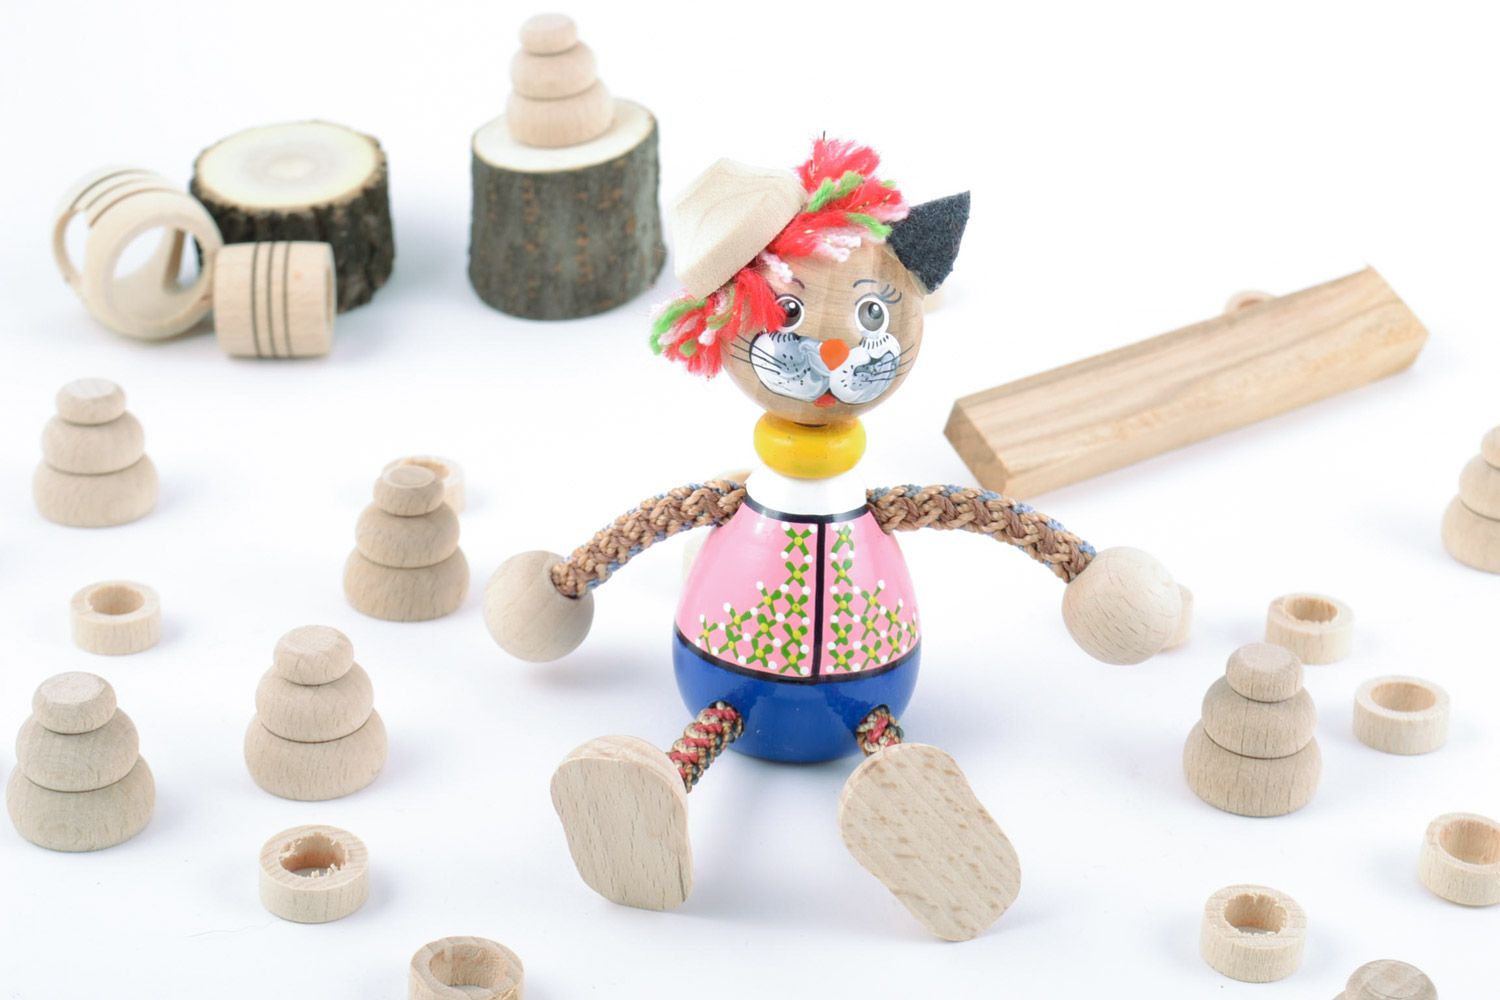 Игрушка из дерева расписанная красками в виде кота ручной работы красочная  фото 1